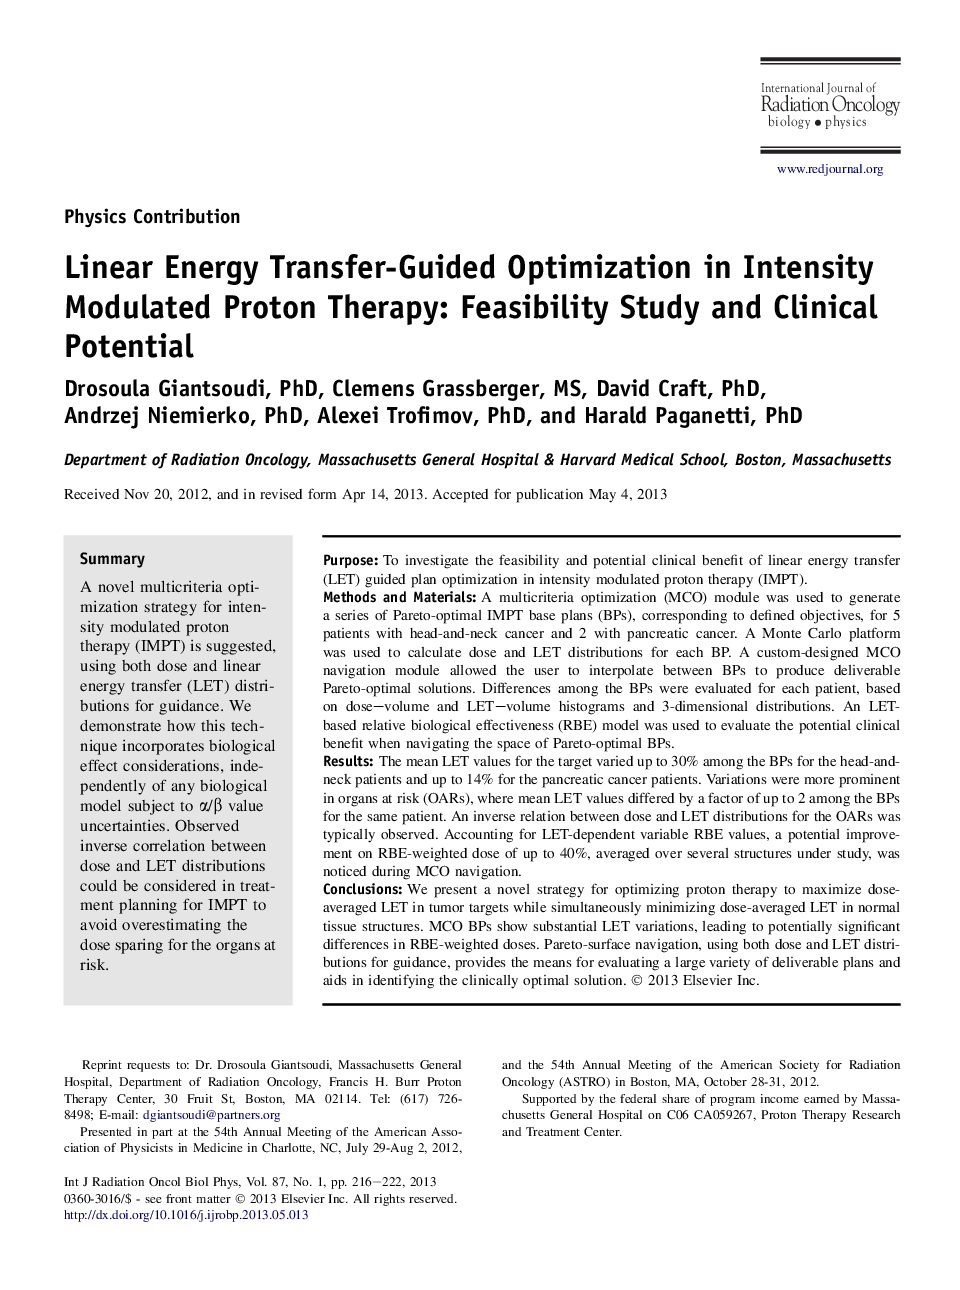 بهینه سازی هدایت انرژی خطی در درمان قدرت پروتونی مدولاسیون شدت: مطالعه امکان سنجی و بالقوه بالینی 